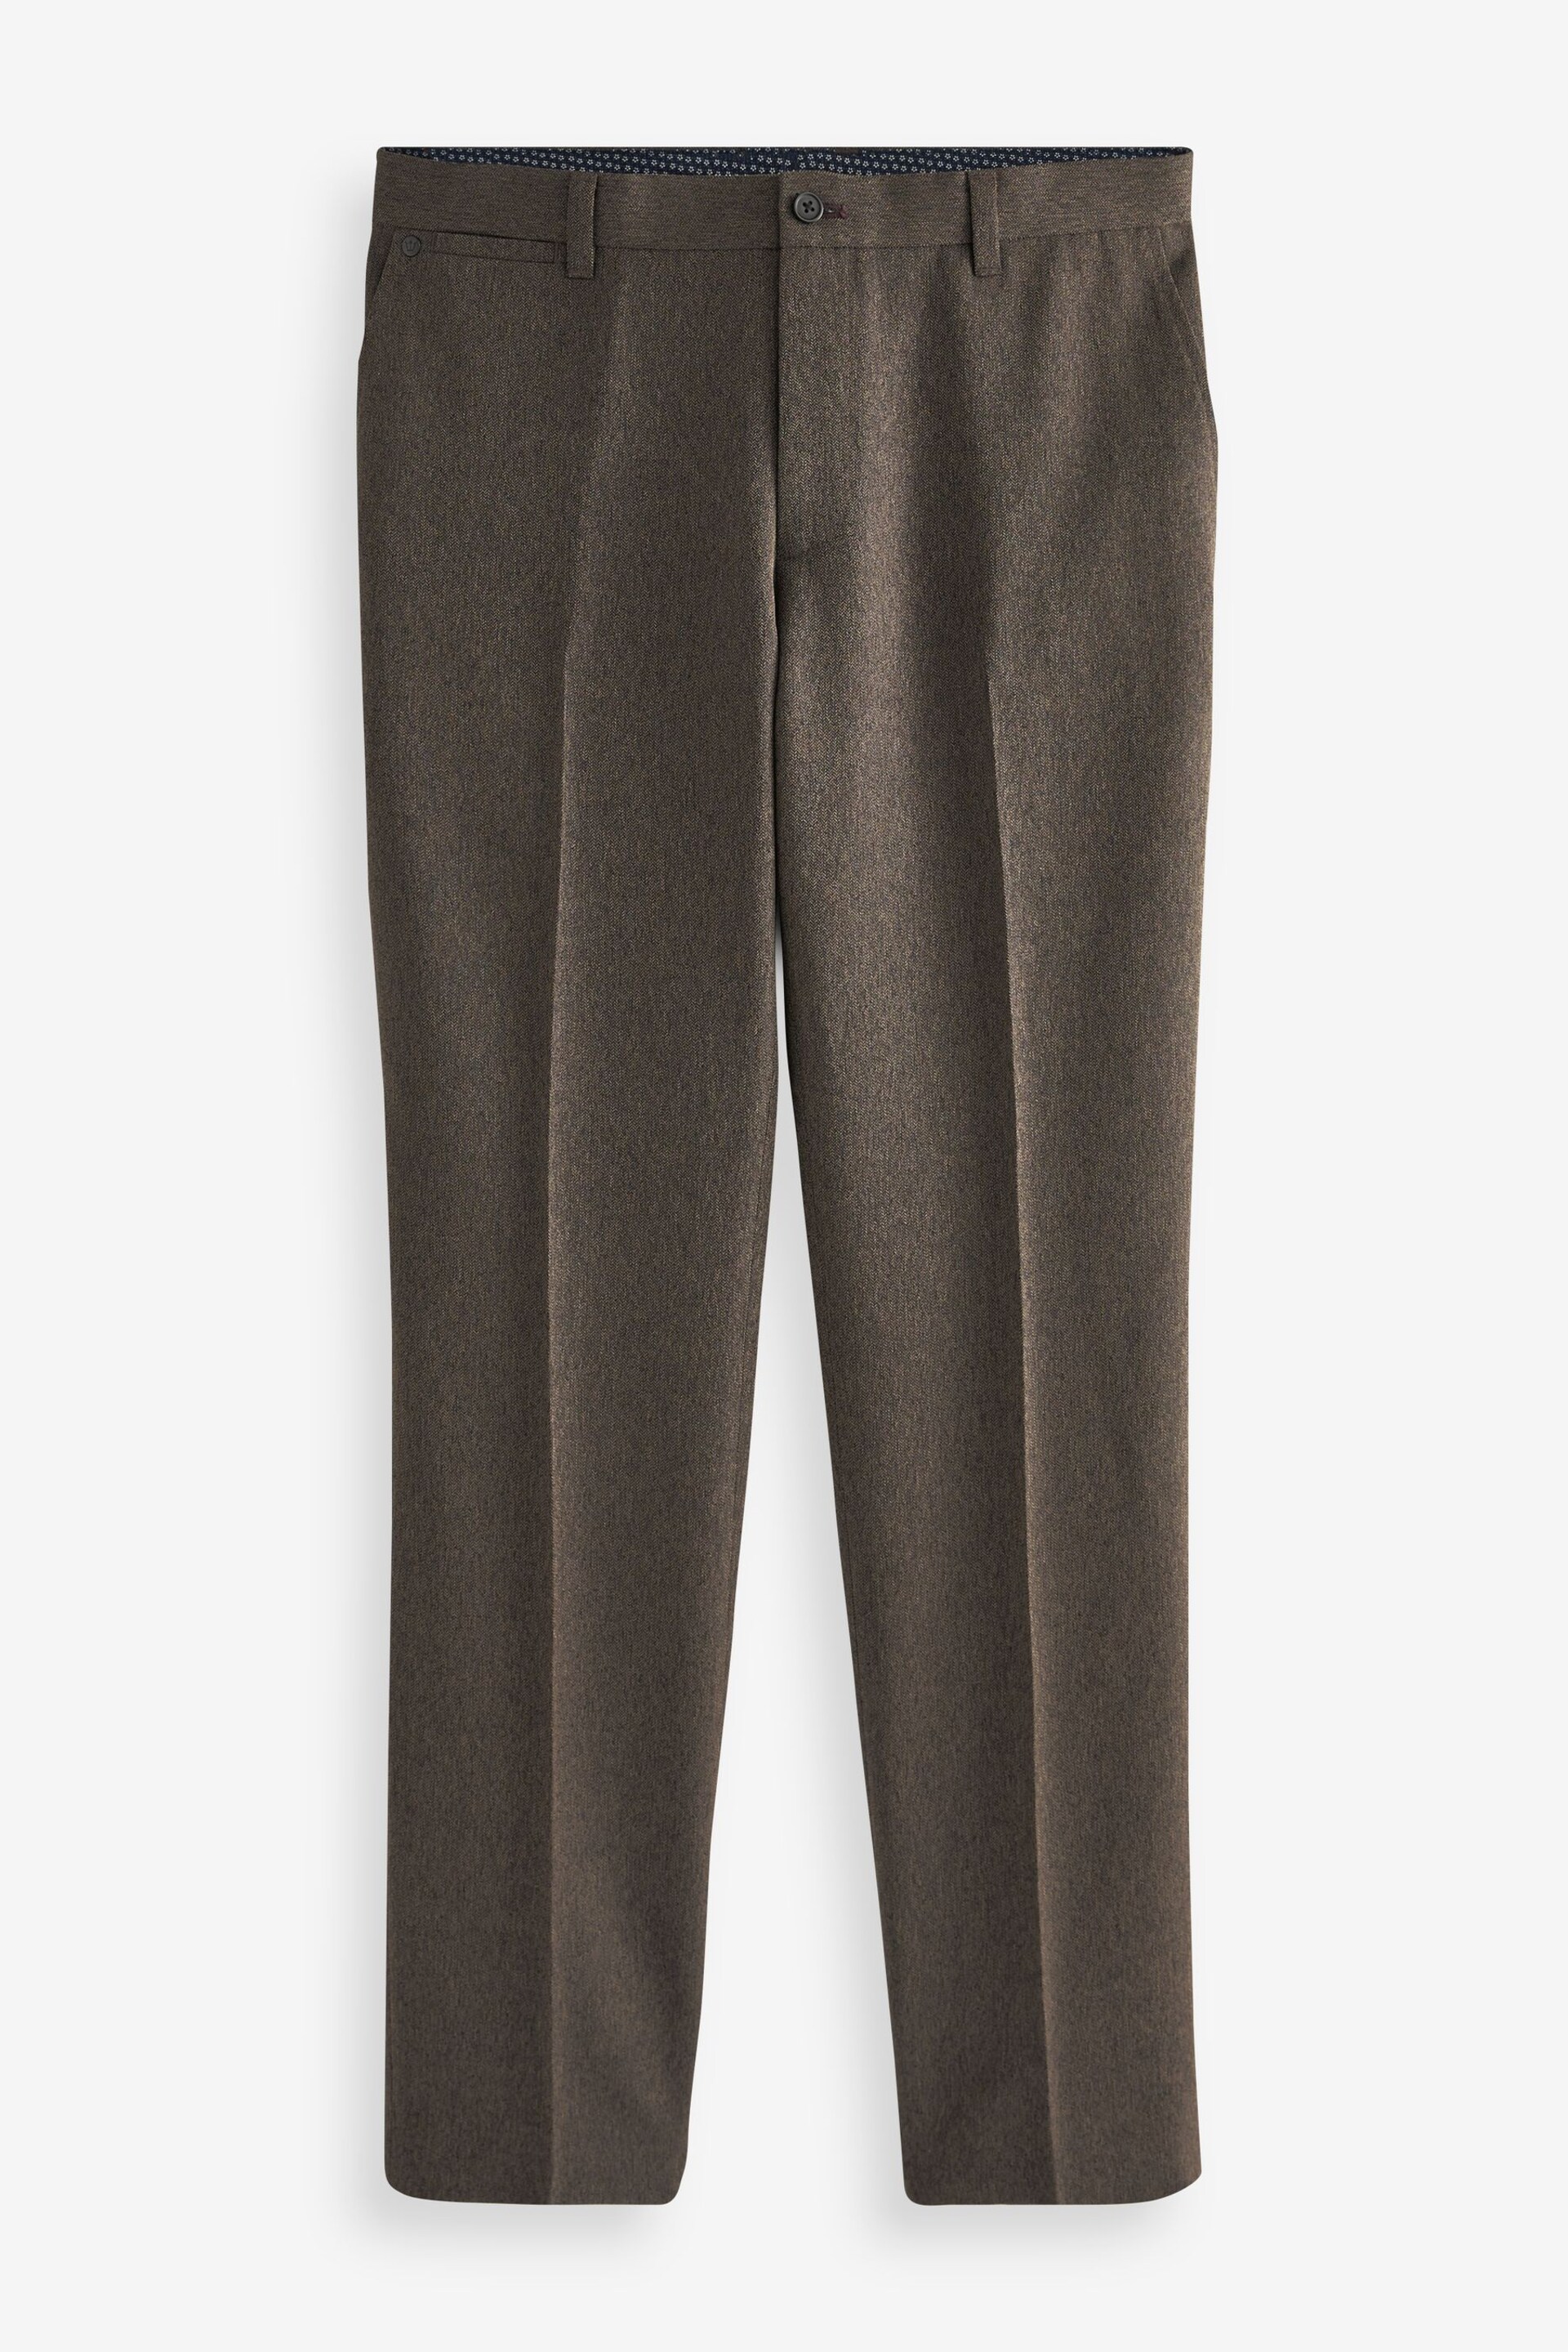 Brown Slim Trimmed Herringbone Textured Trousers - Image 5 of 9